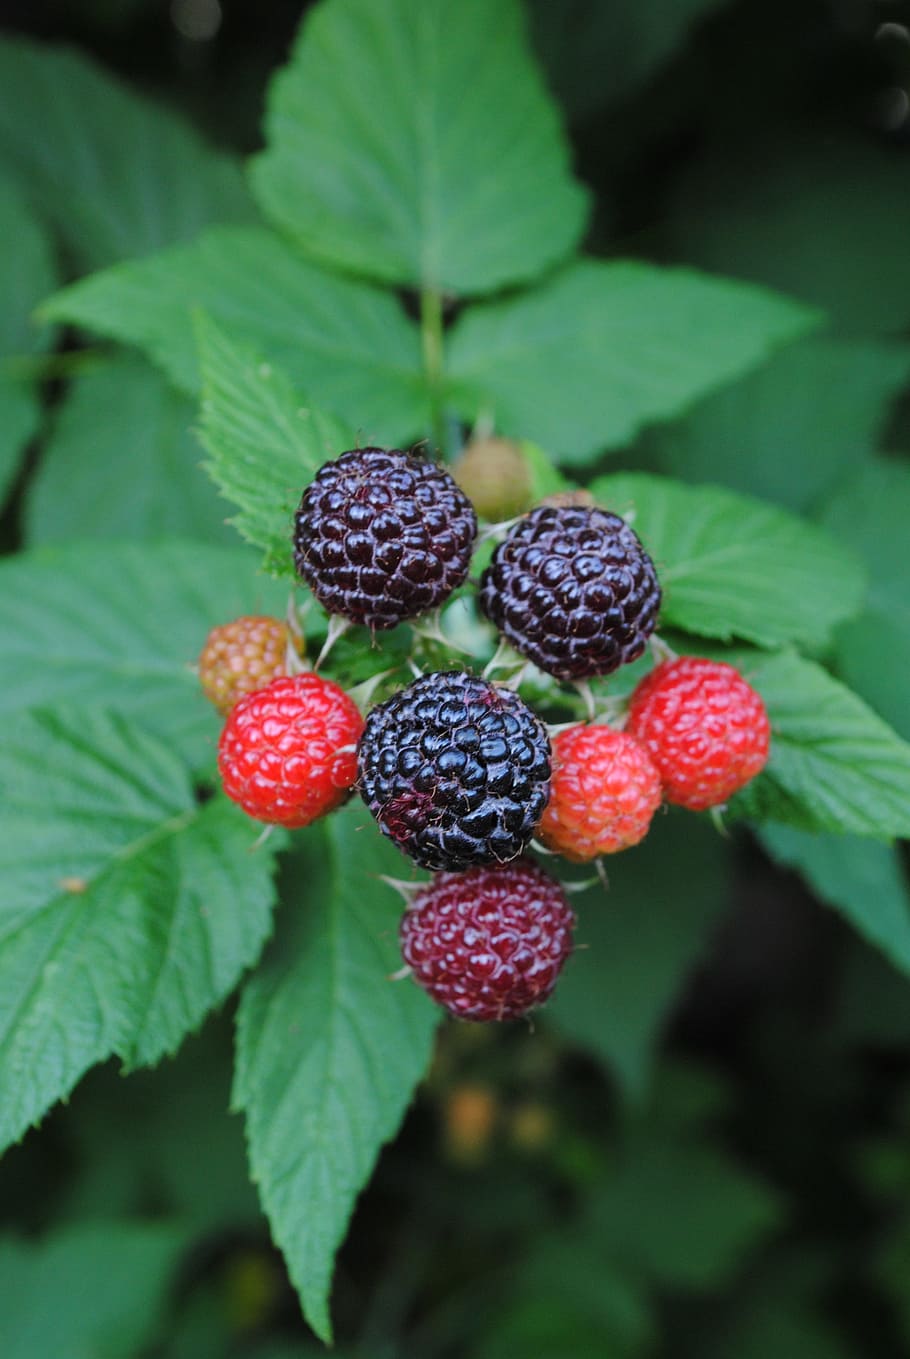 blackberry, buah-buahan, tanaman, semak, buah, hitam, buah beri, makanan sehat, makanan dan minuman, makanan